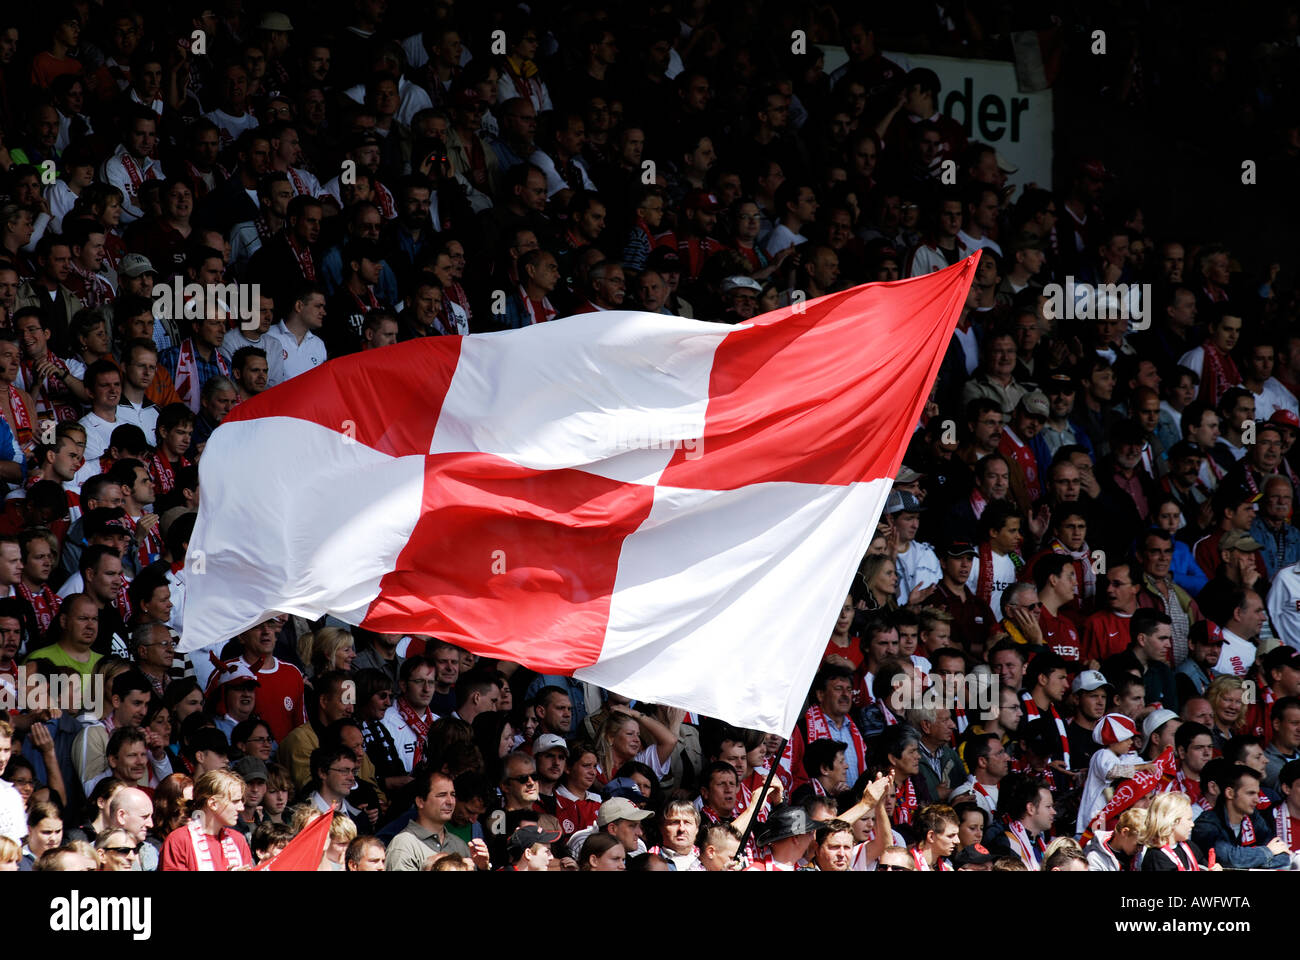 Des fans de football géant vague drapeau à damiers rouge et blanc Banque D'Images